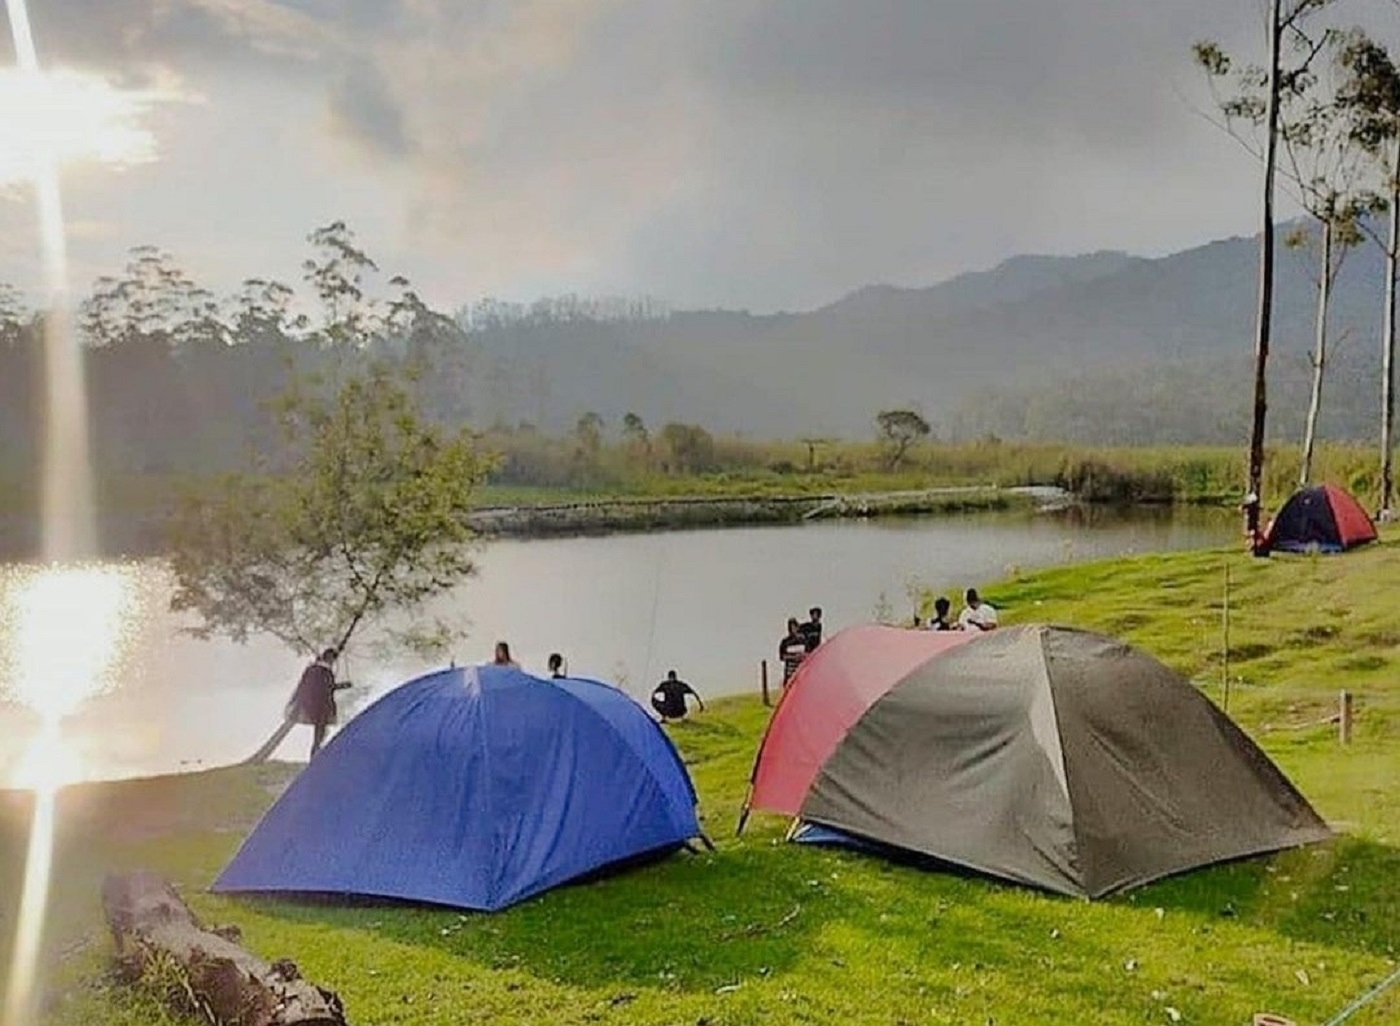 Camping ground dengan pemandangan danau dan bukit-bukit menjulang